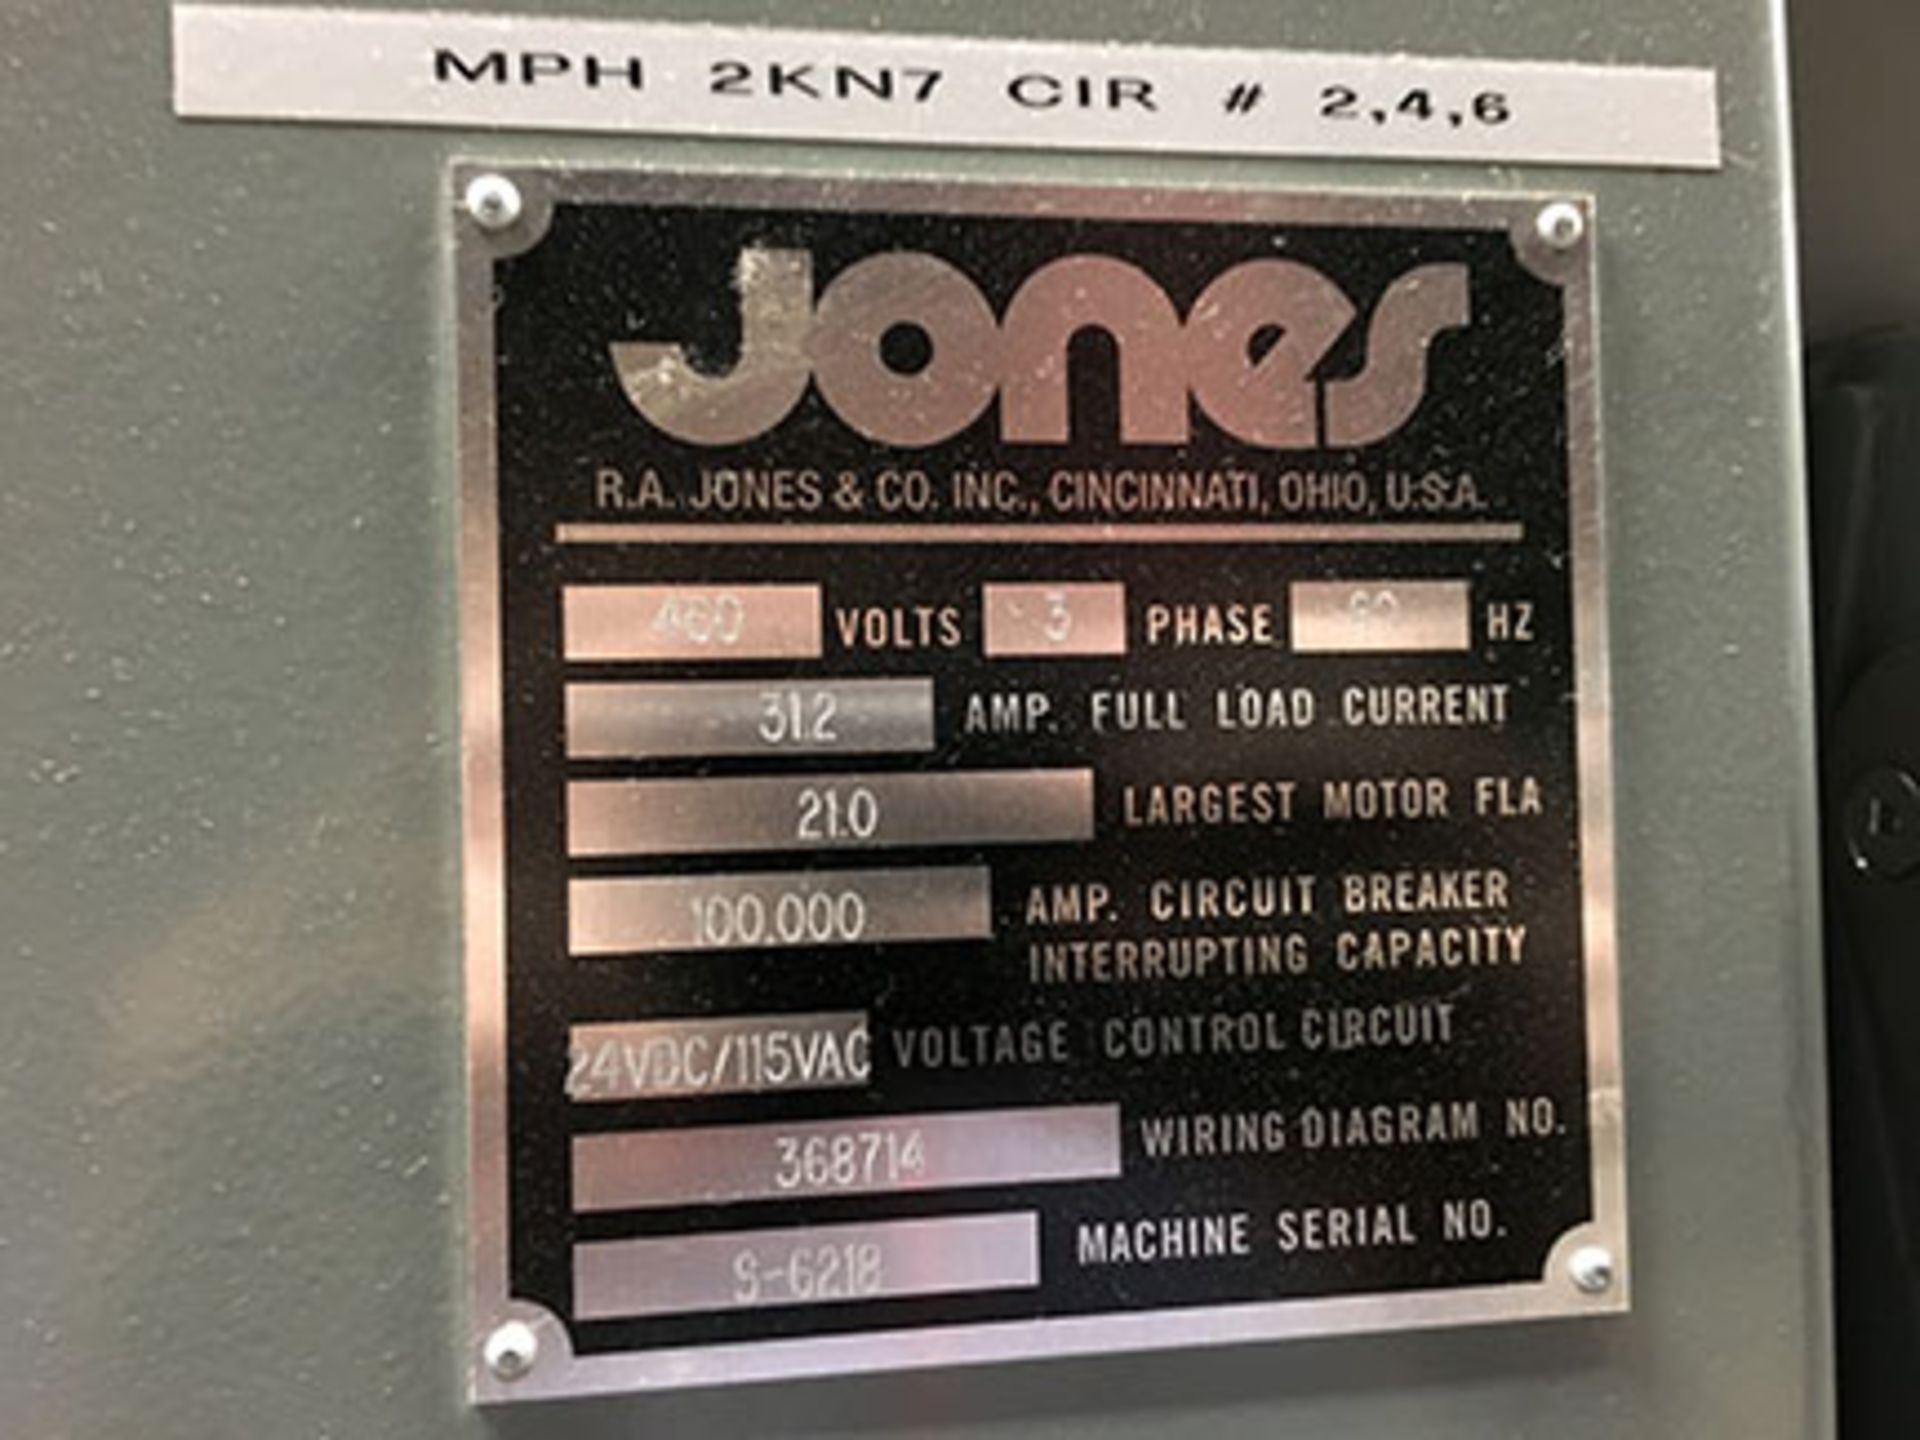 MERIDIAN BY JONES CUSTOM BUILT PACKAGING MACHINE; S/N 5-6218, 460 VOLT, 3 PHASE, 60 HZ, 31.2 AMP, - Image 7 of 7